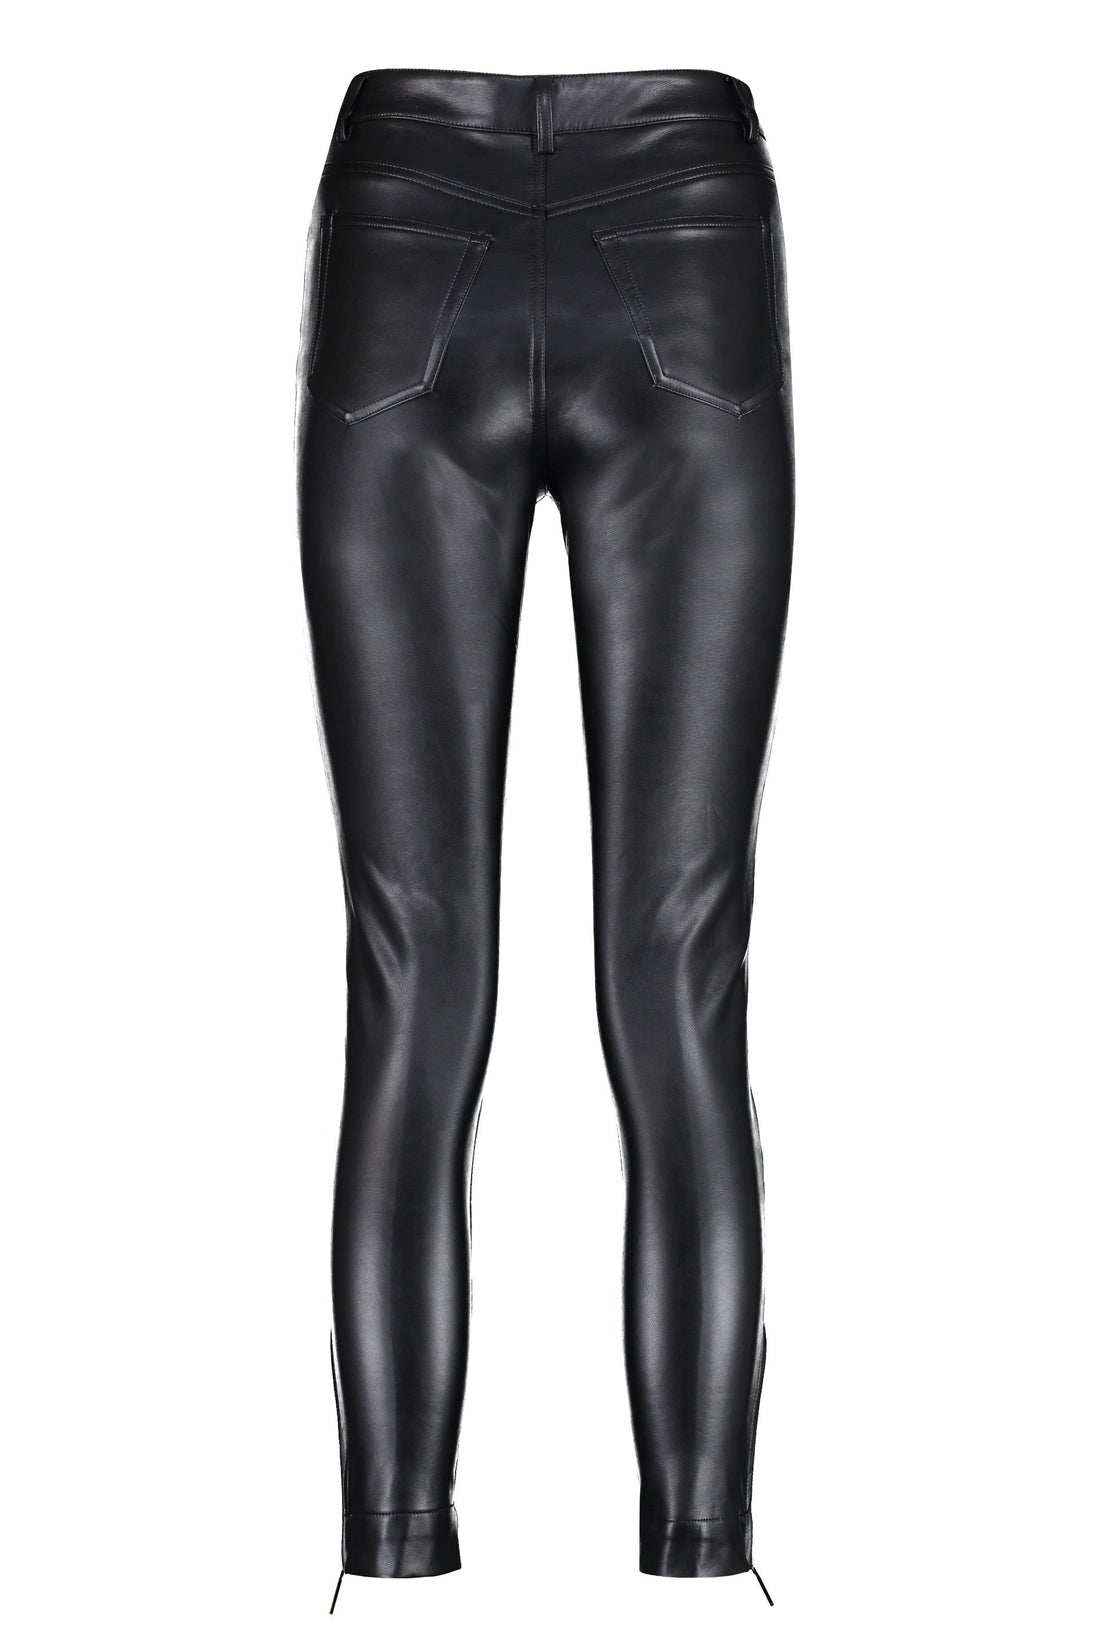 MICHAEL MICHAEL KORS-OUTLET-SALE-Faux leather trousers-ARCHIVIST